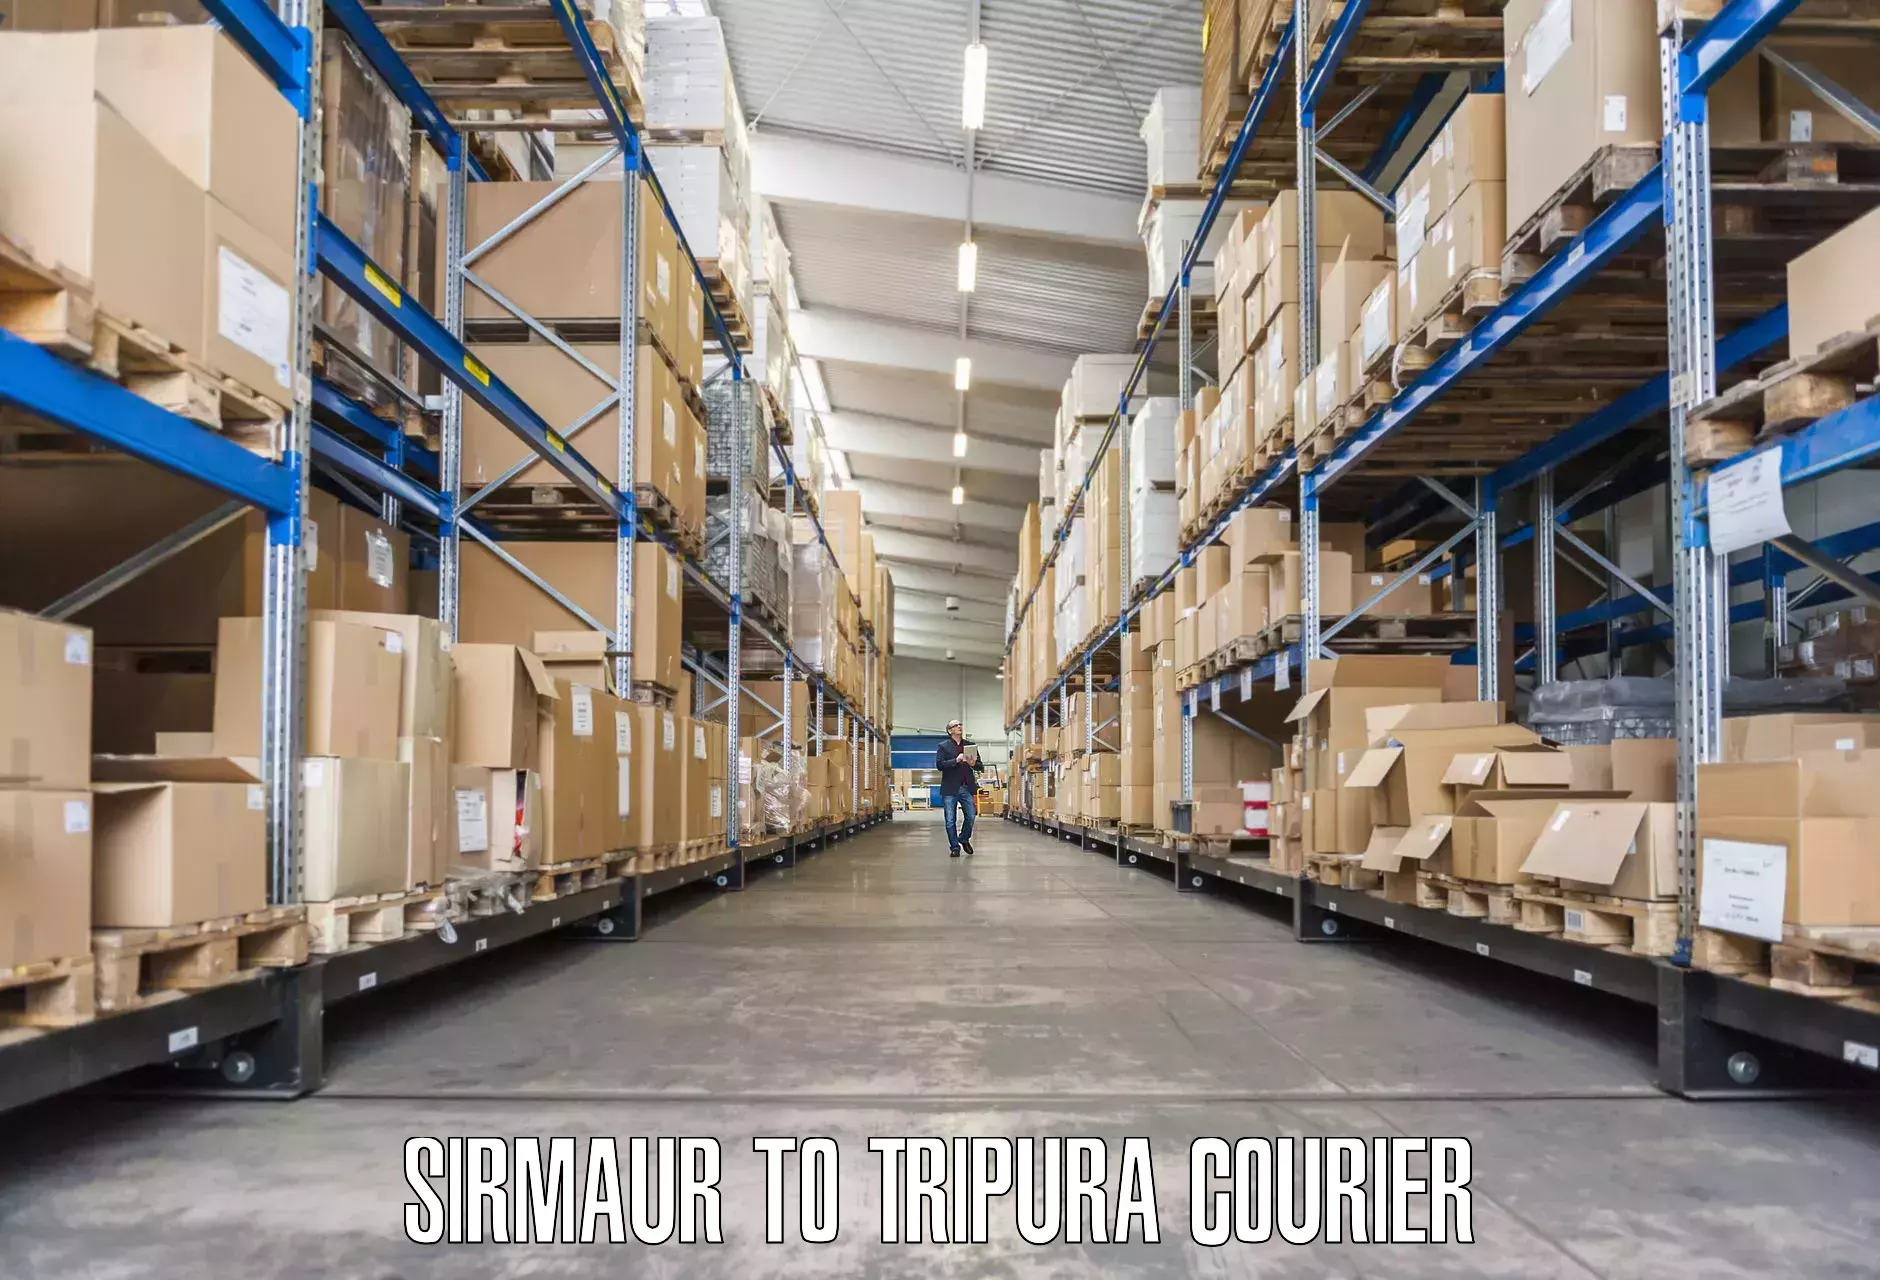 Furniture transport experts Sirmaur to Tripura